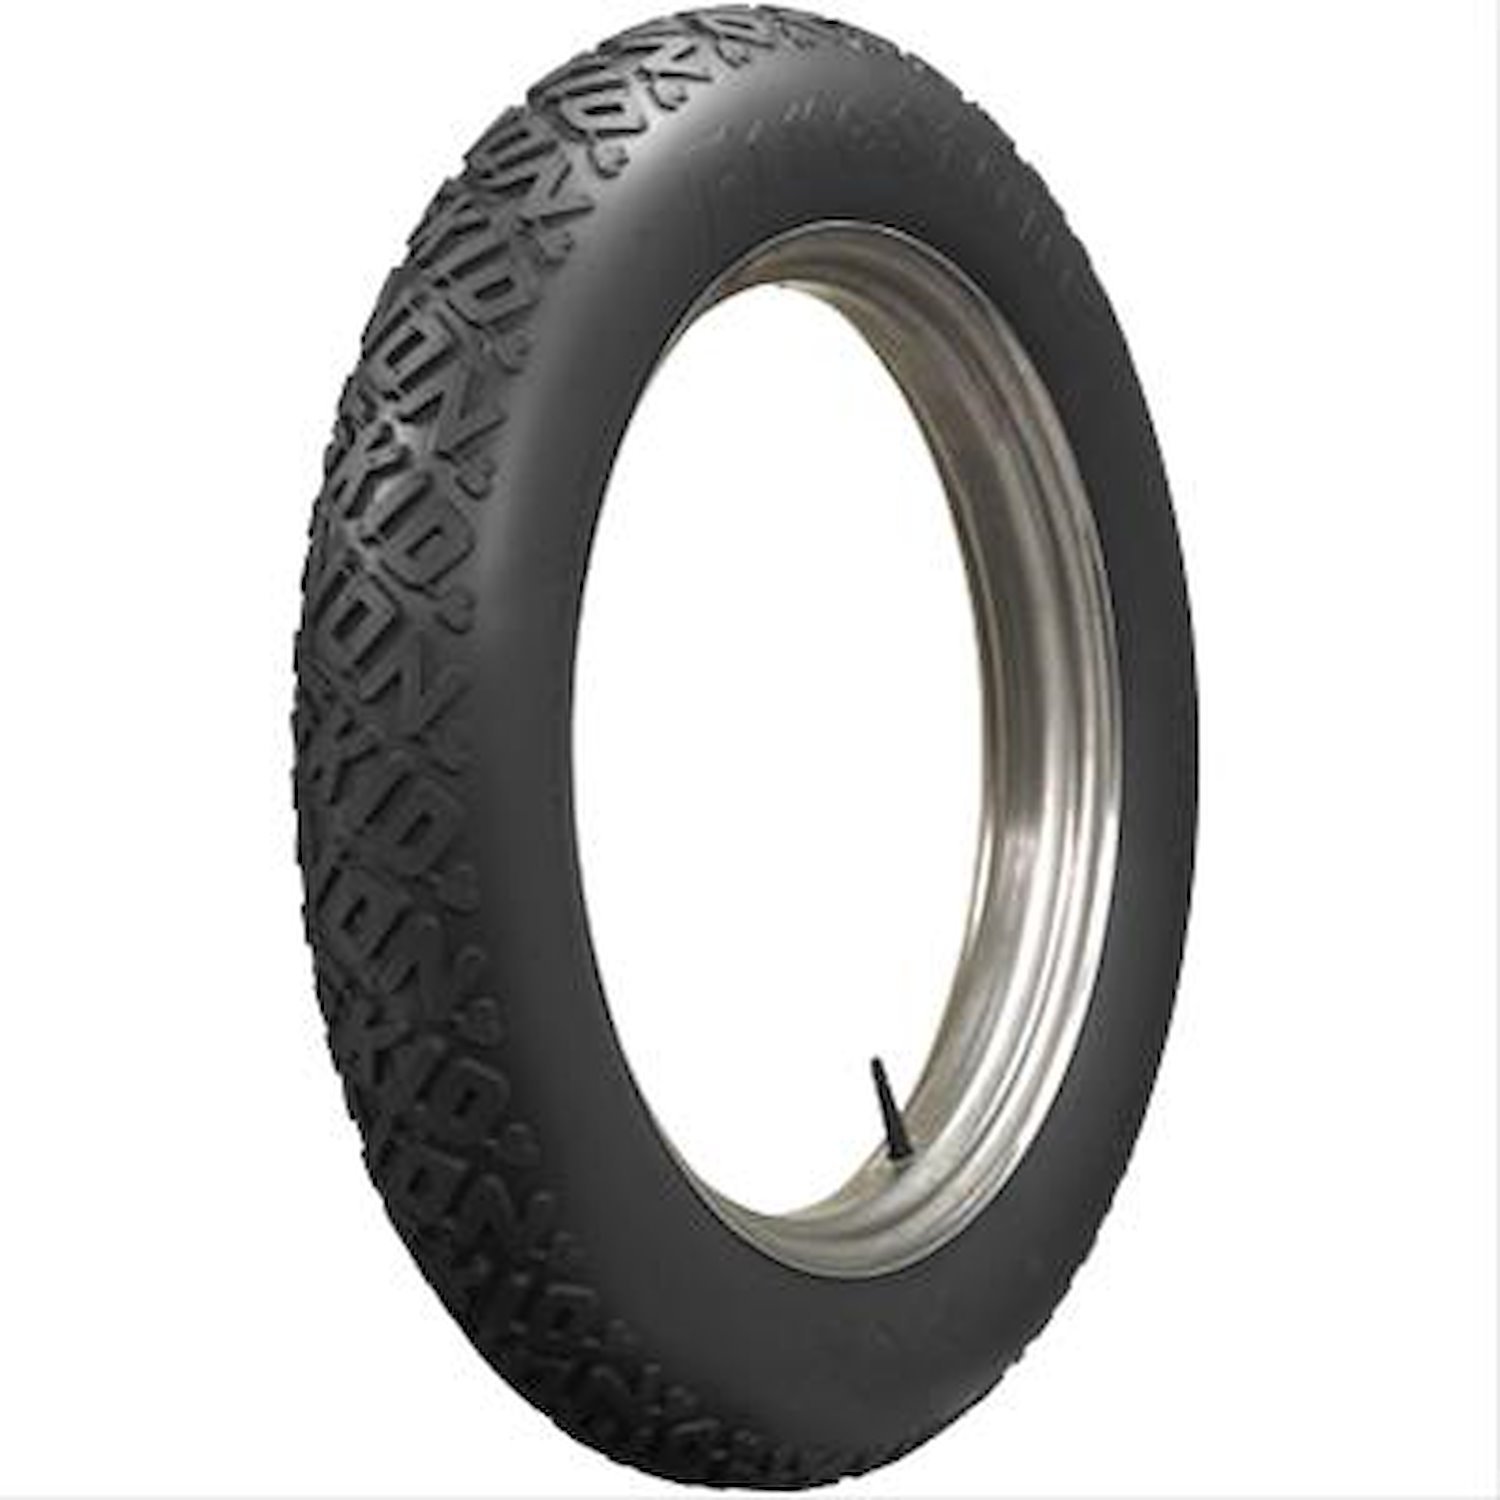 805980 Tire, Firestone Non-Skid, All Black, 33x5